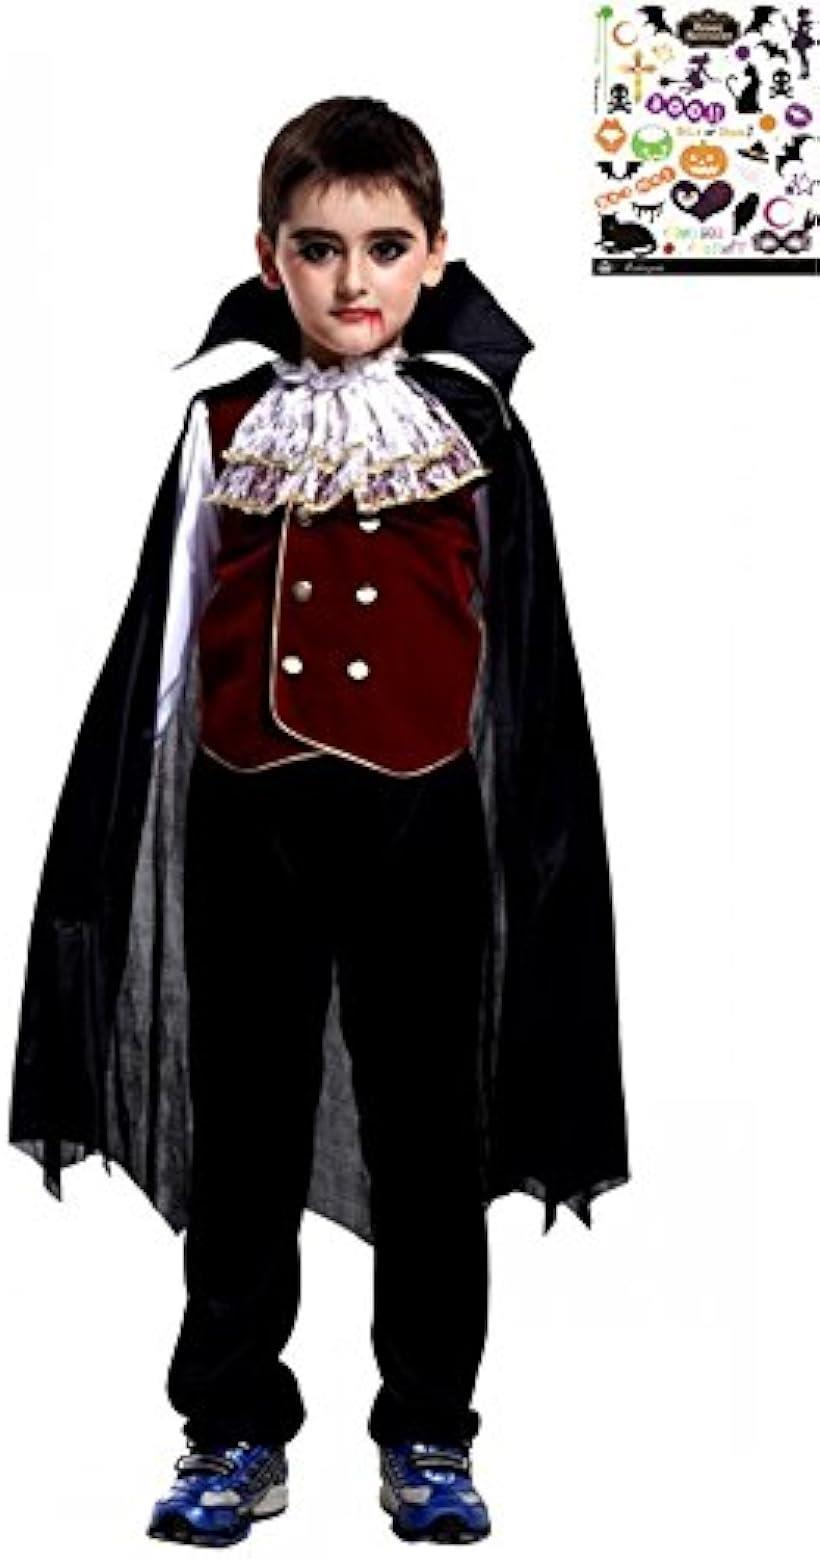 ヴァンパイアプリンス キッズコスチューム ハロウィン ペイントシール 付き 2点セット 男の子 S596 L 120cm-130cm( 黒、赤、, L(120cm-130cm))